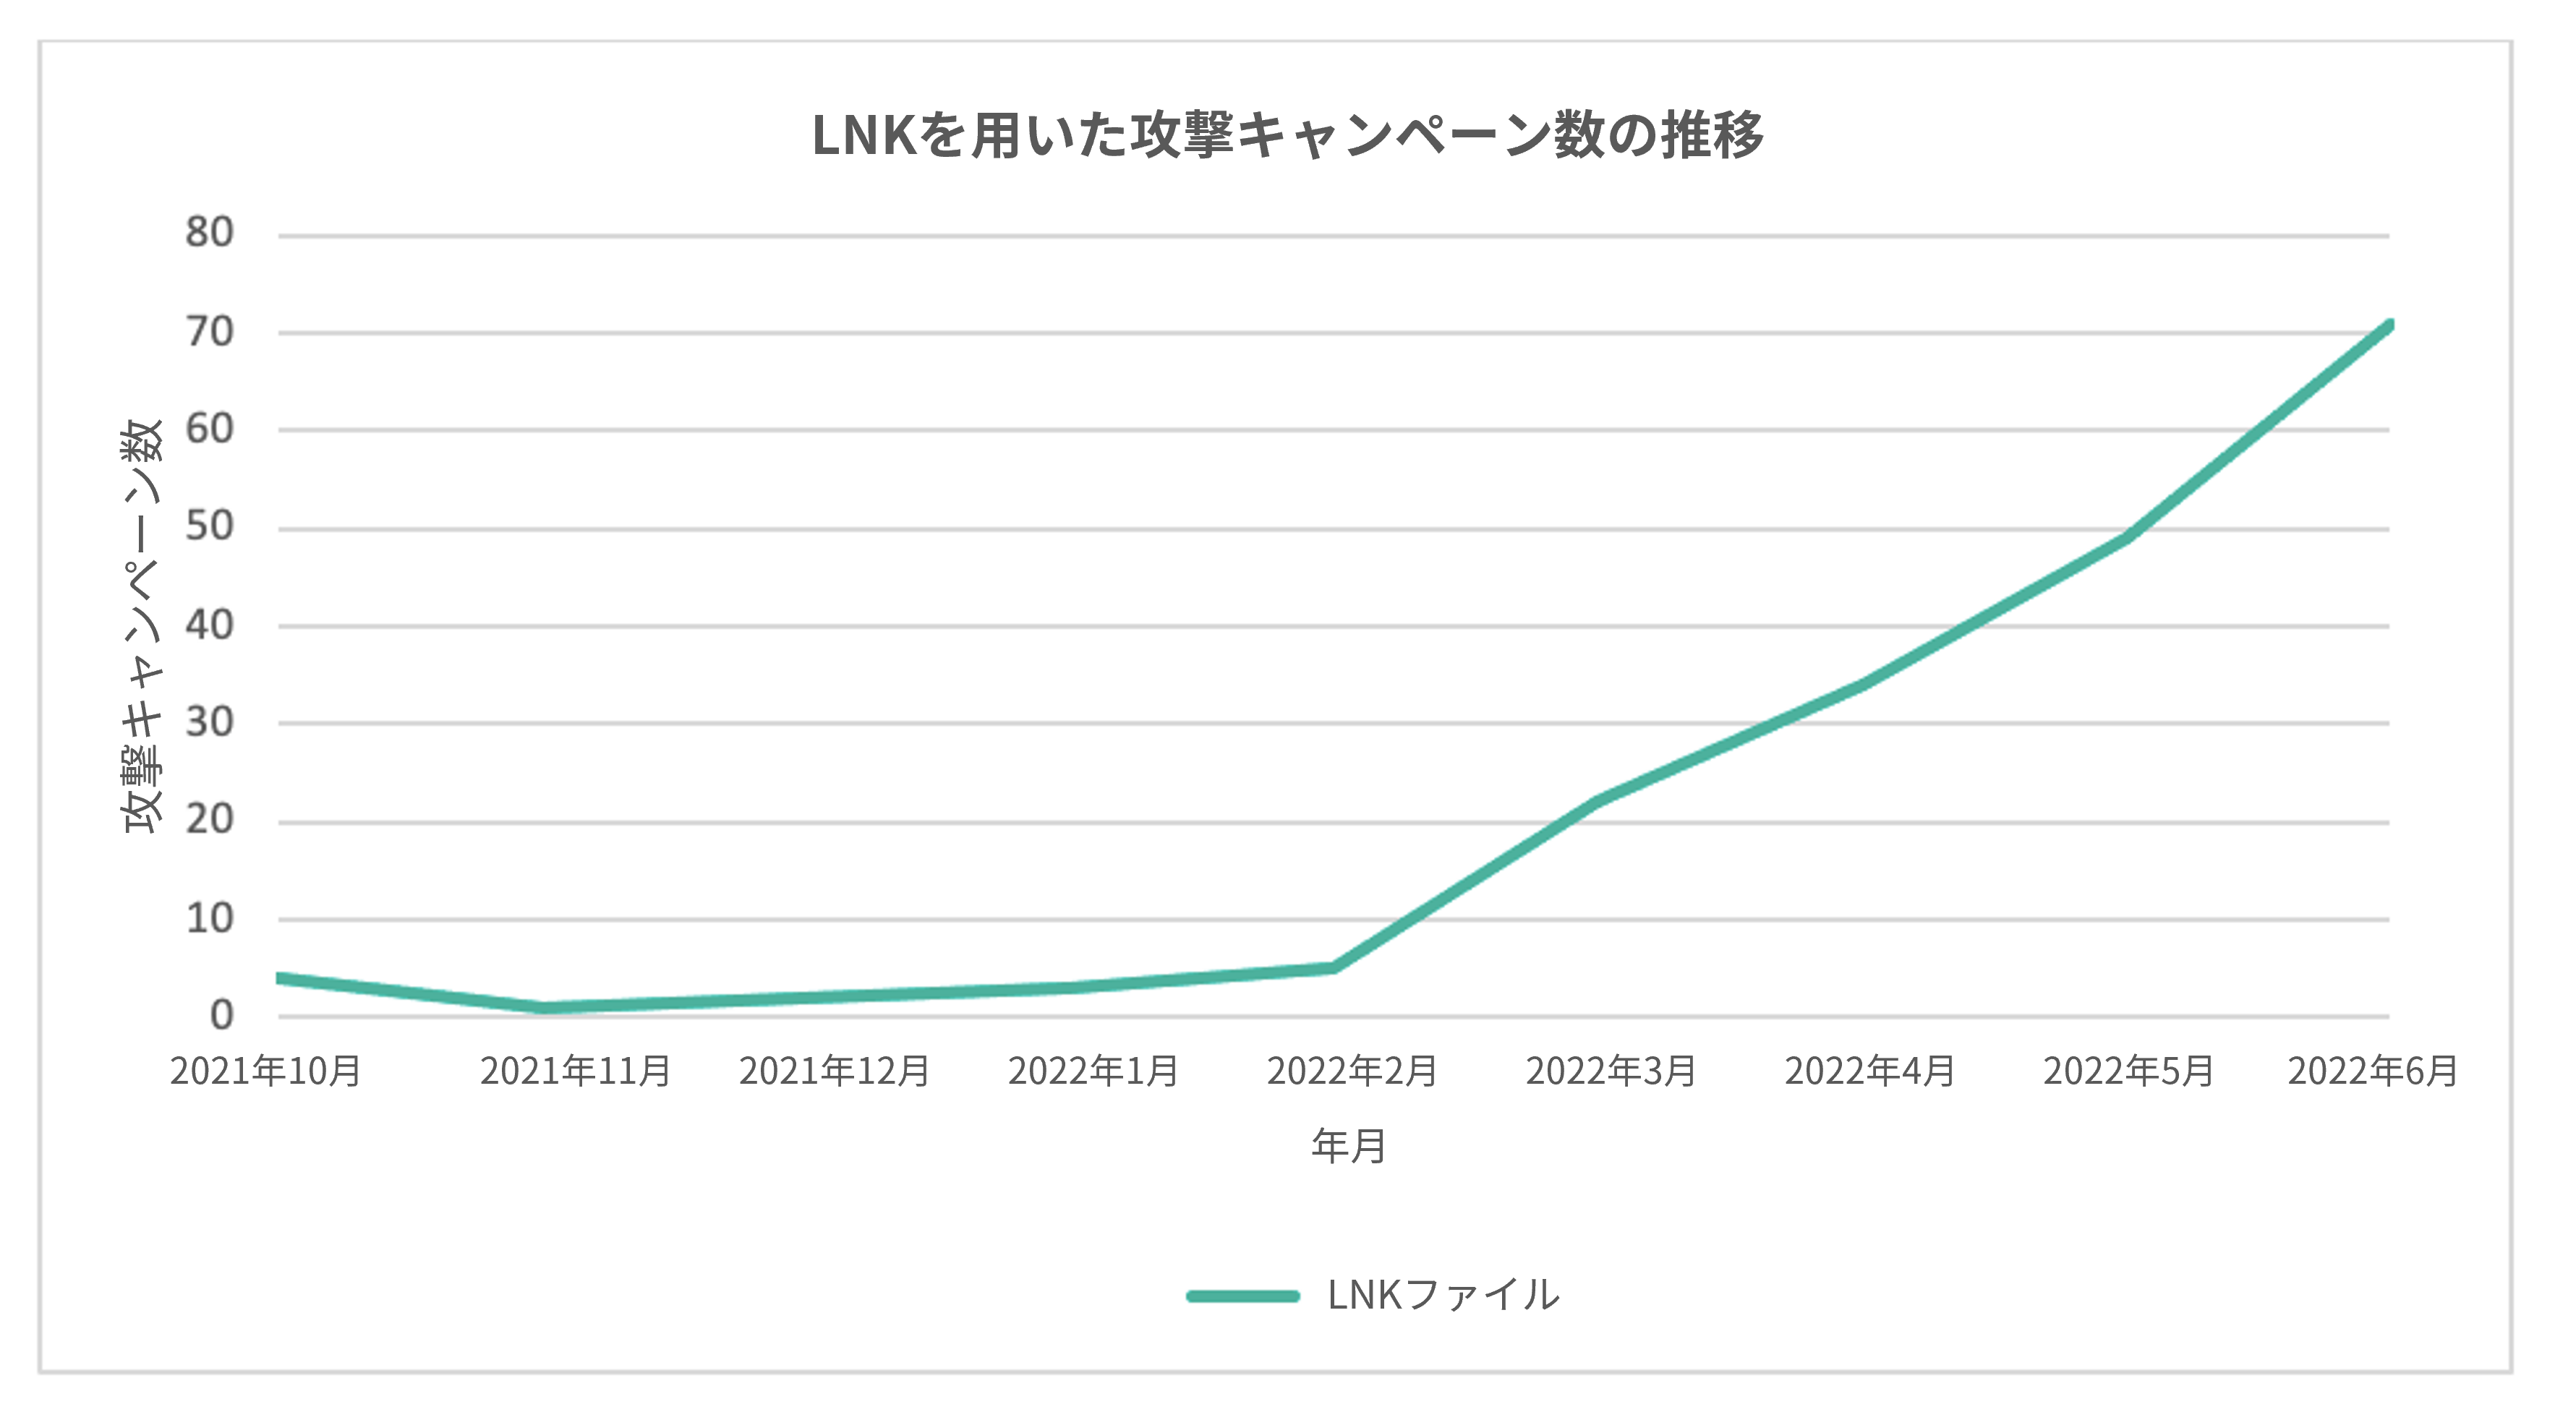 LNKを用いた攻撃キャンペーン数の推移